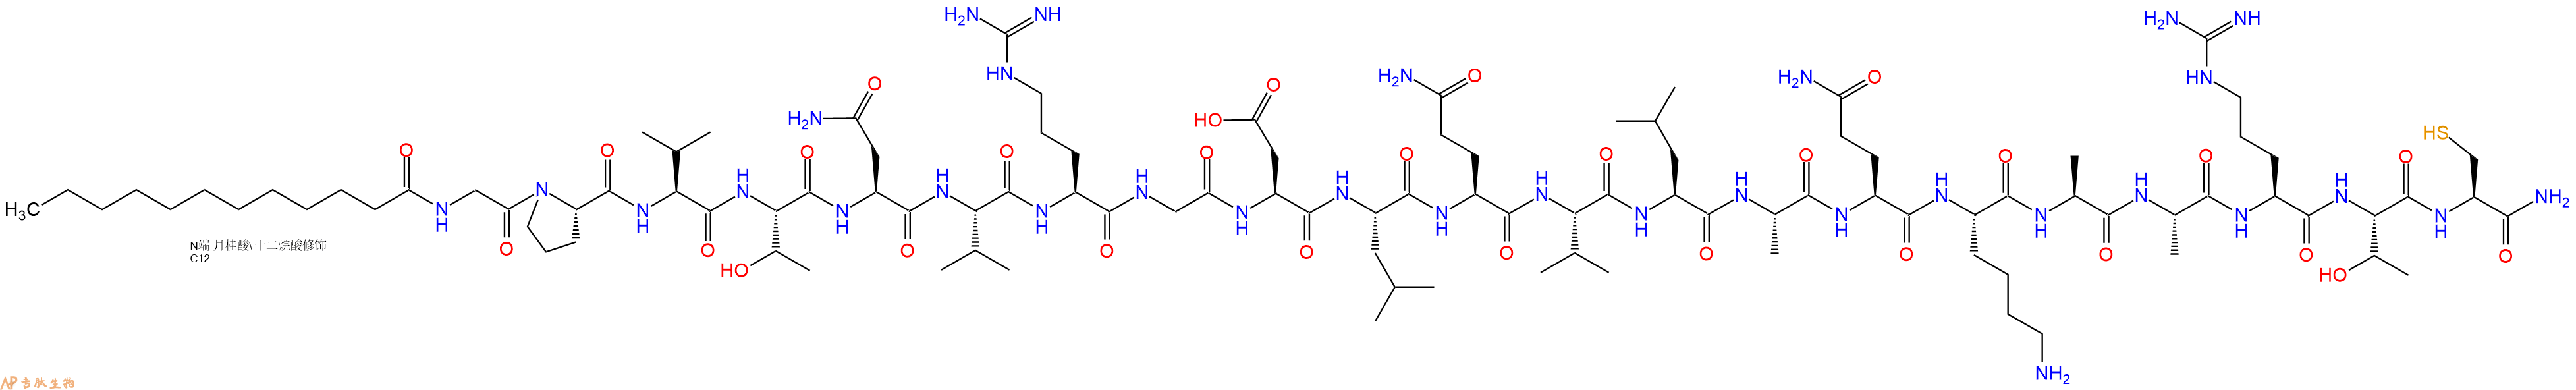 专肽生物产品Lauricacid-Gly-Pro-Val-Thr-Asn-Val-Arg-Gly-Asp-Leu